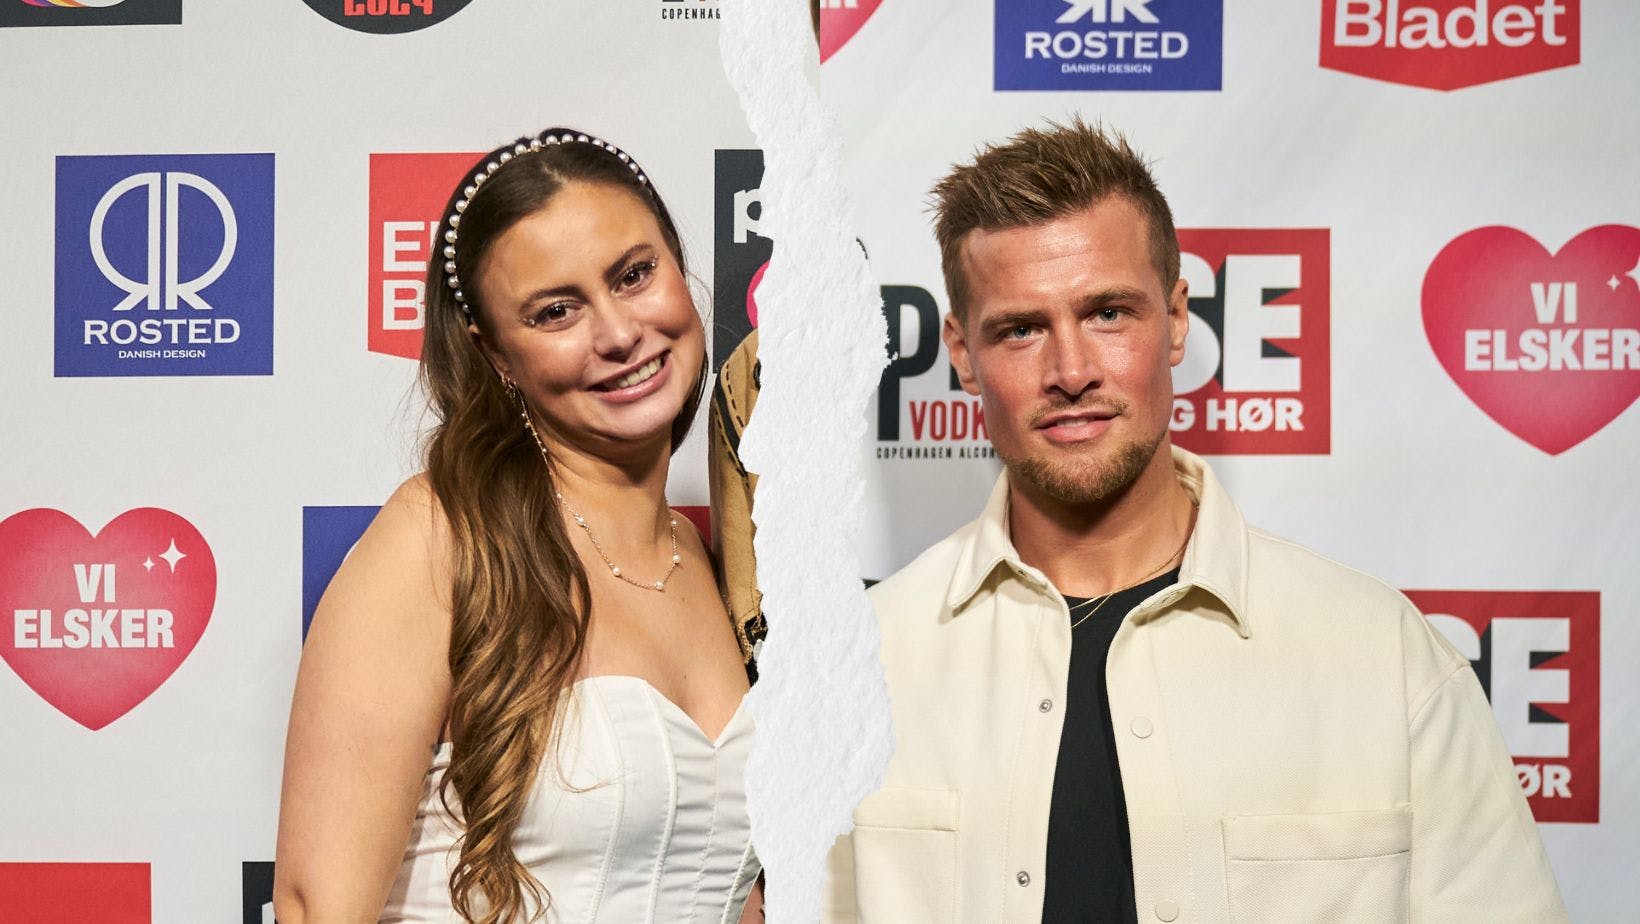 Aija Vogel og Anders Thimm fik øjnene op for hinanden til Reality Awards efterfesten, og det faldt ikke i god jord hos flere kvinder, som også var interesseret i "Landmand søger kærlighed"-deltageren.